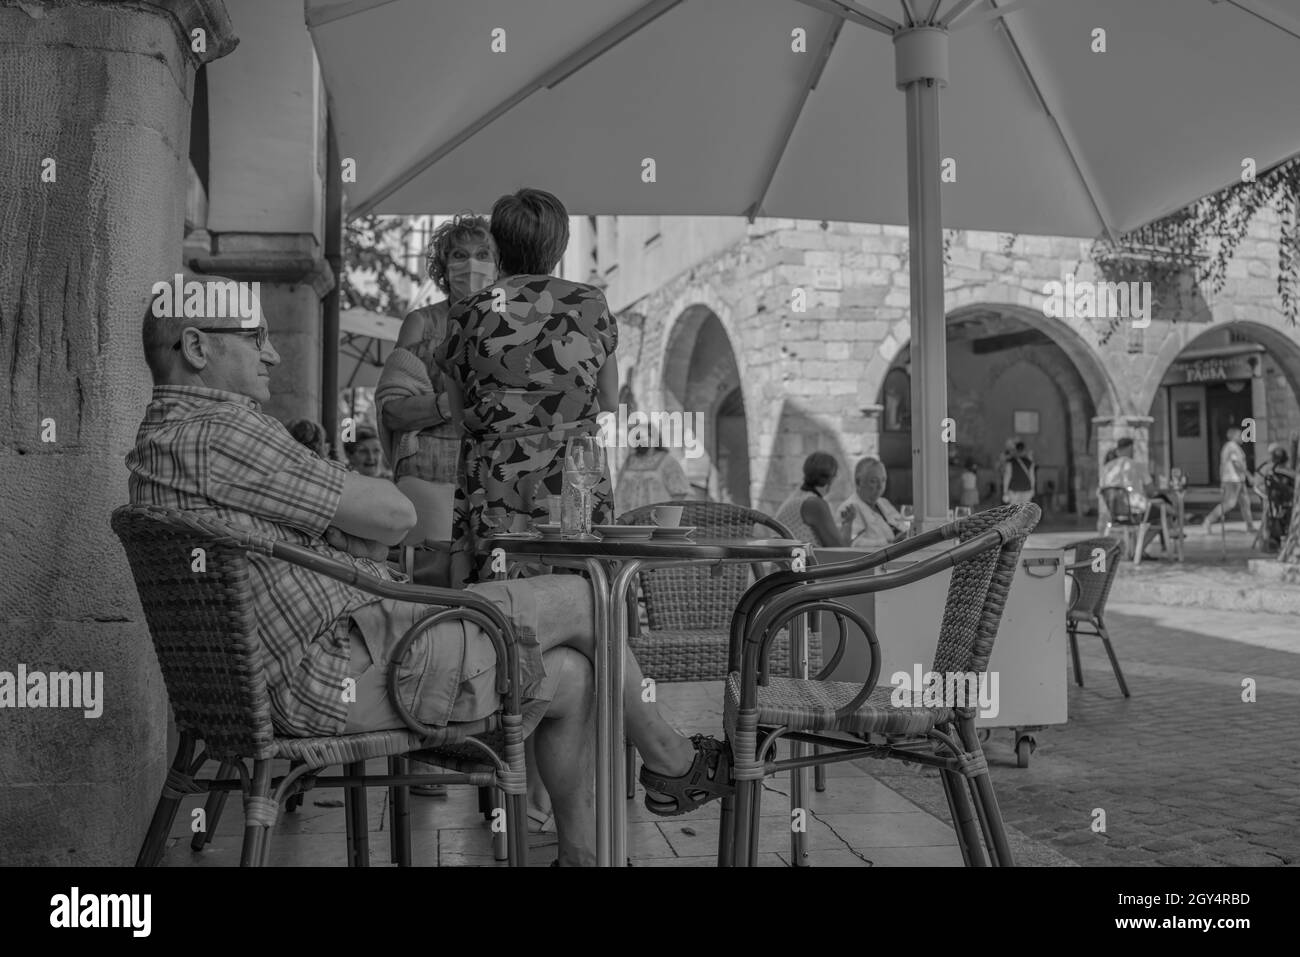 MONTBLANC - SPANIEN - 12. SEPTEMBER 2021: Schwarz-weißes Vintage-Straßenbild eines Mannes, der im Café sitzt Stockfoto